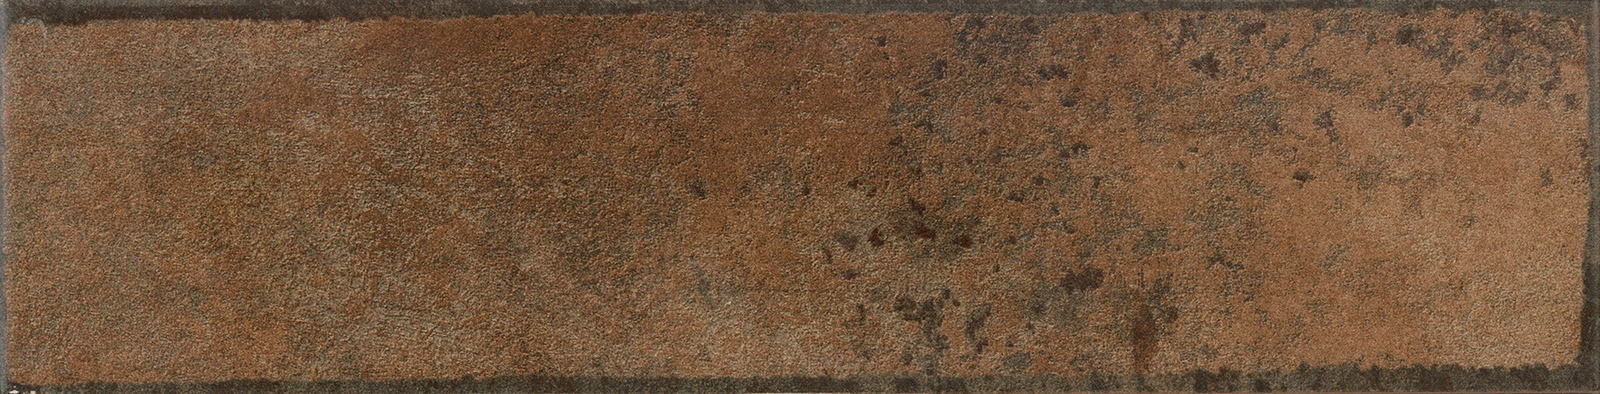 Obklad matný Al-loy Copper 7,5x30